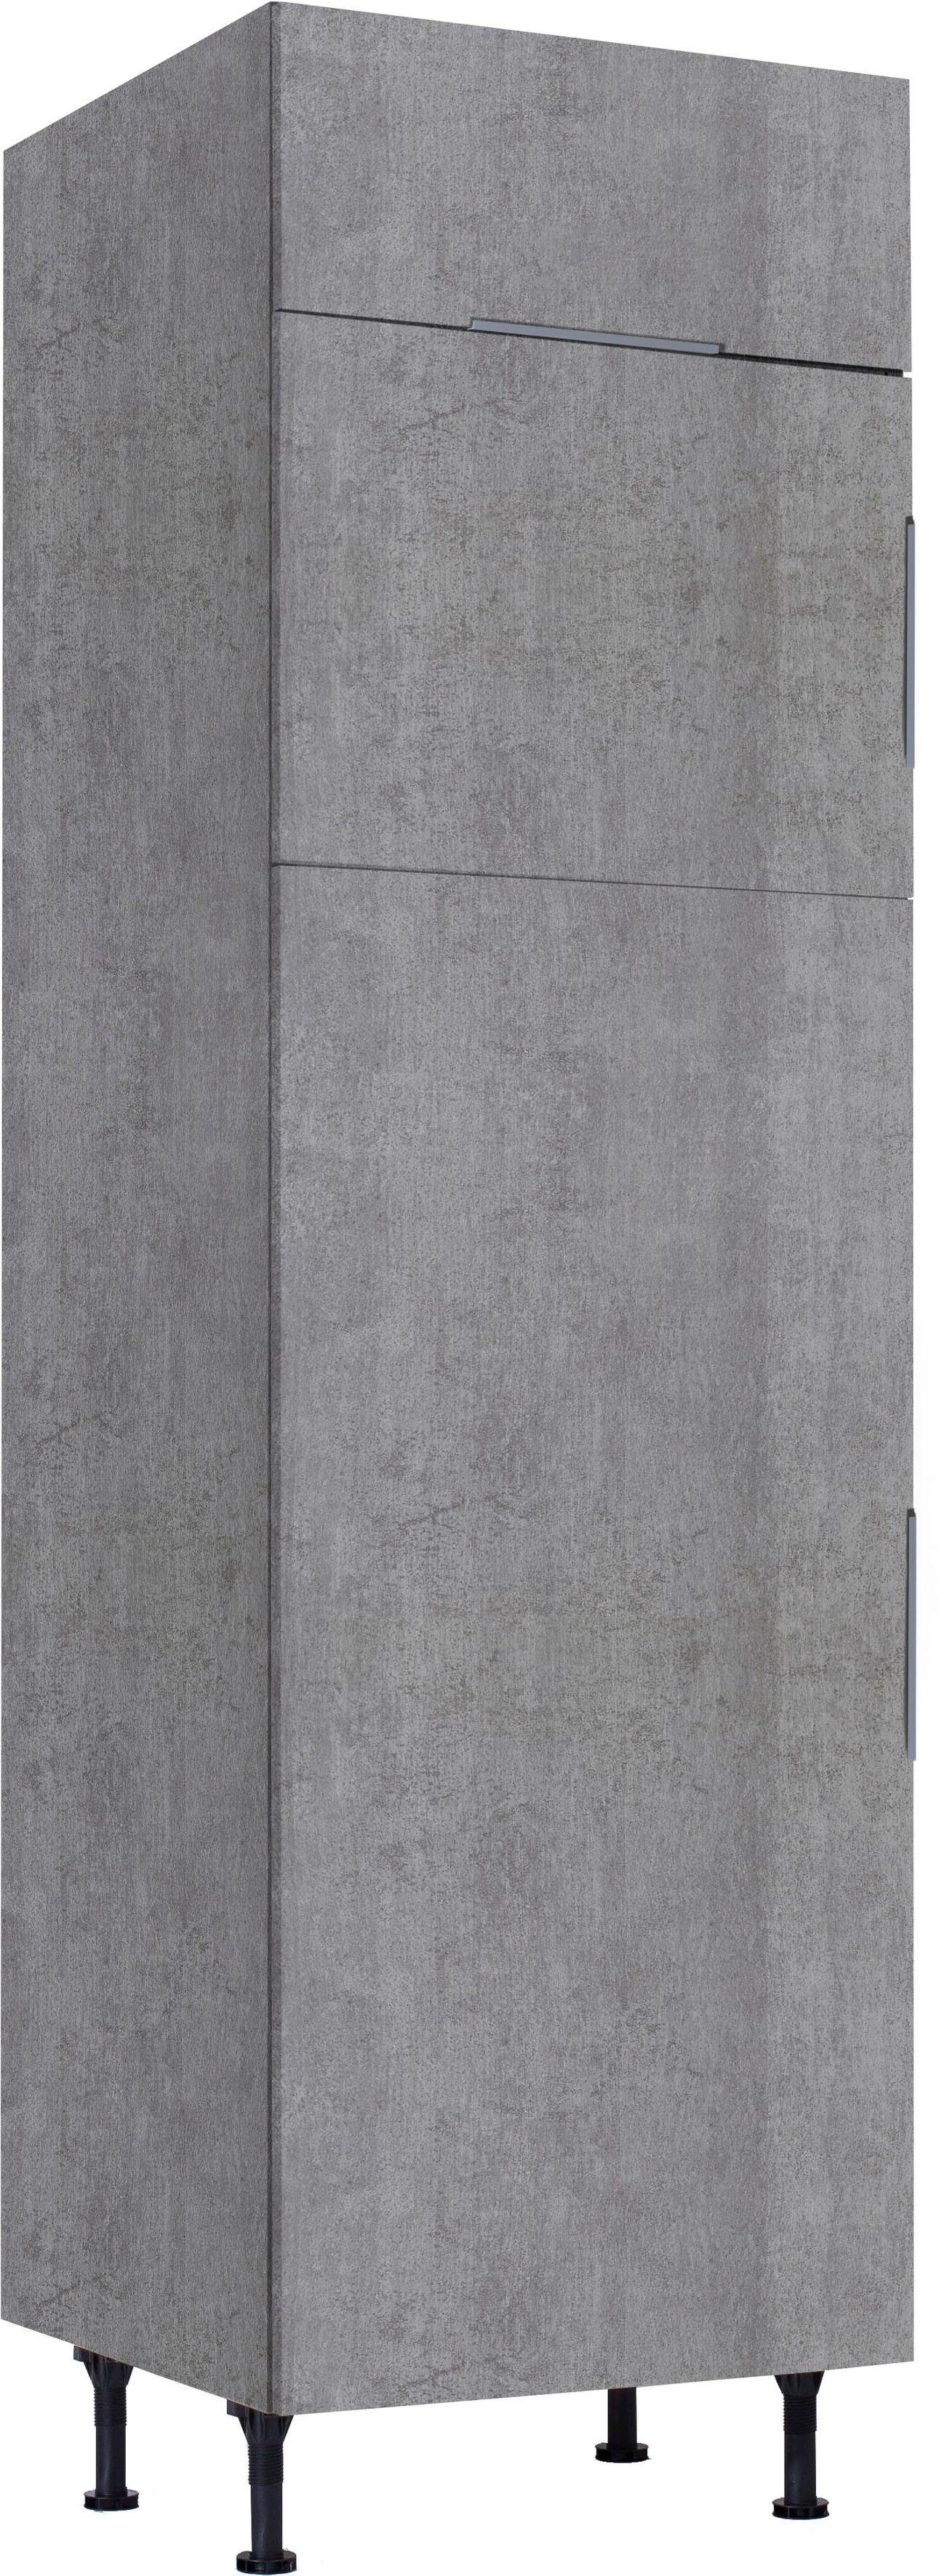 betonfarben | Tara OPTIFIT Kühlumbauschrank betonfarben